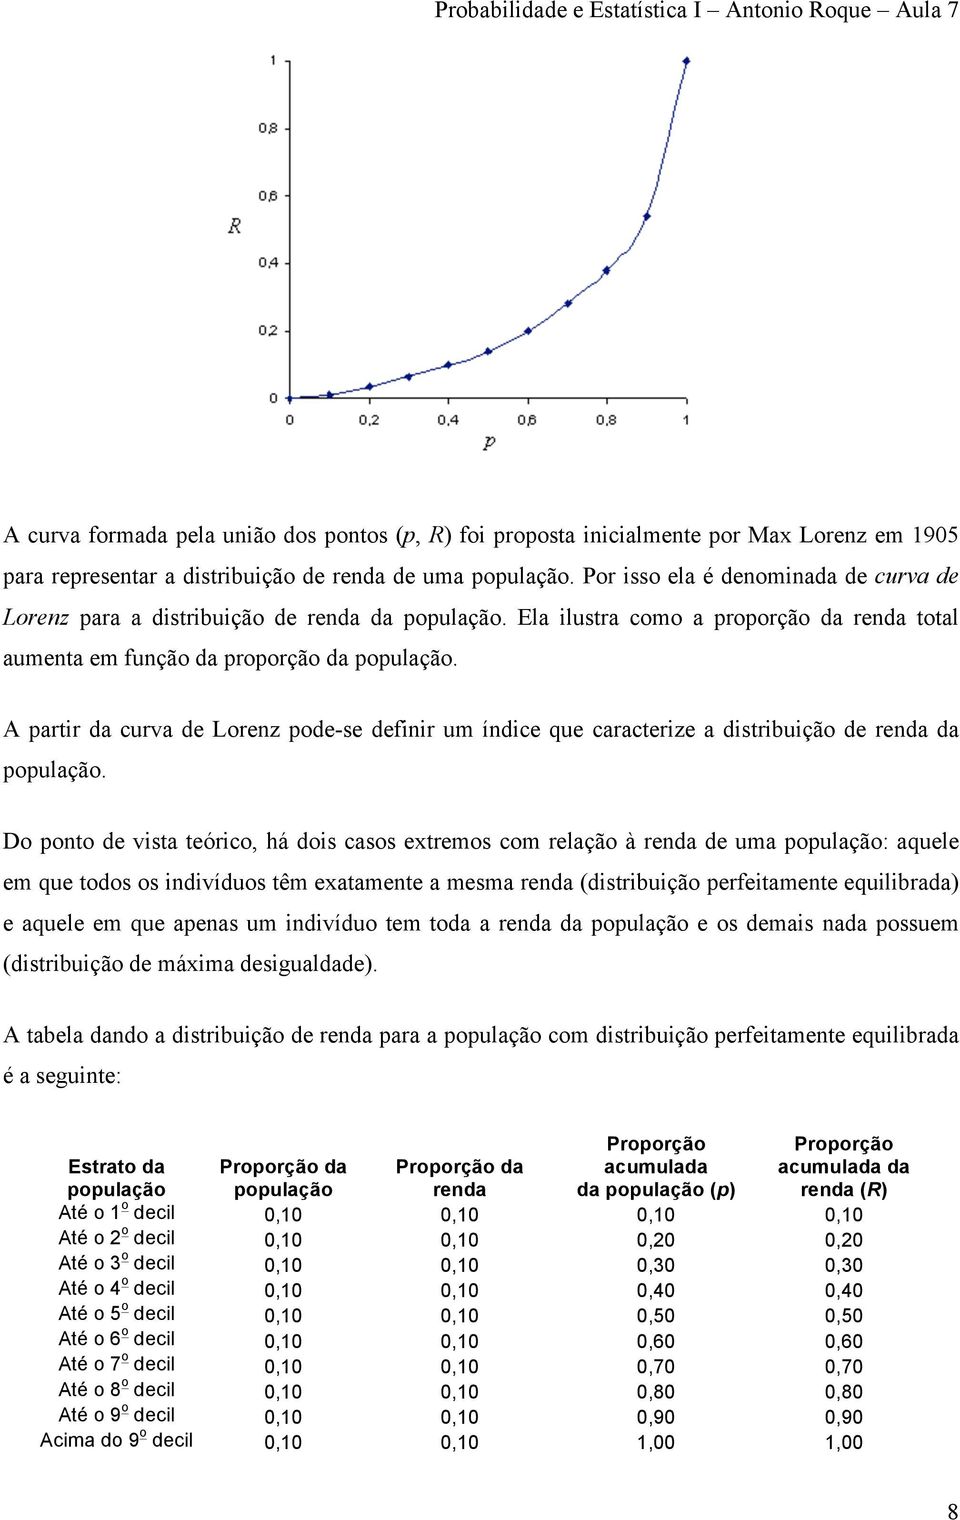 A partir da curva de Lorenz pode-se definir um índice que caracterize a distribuição de renda da população.